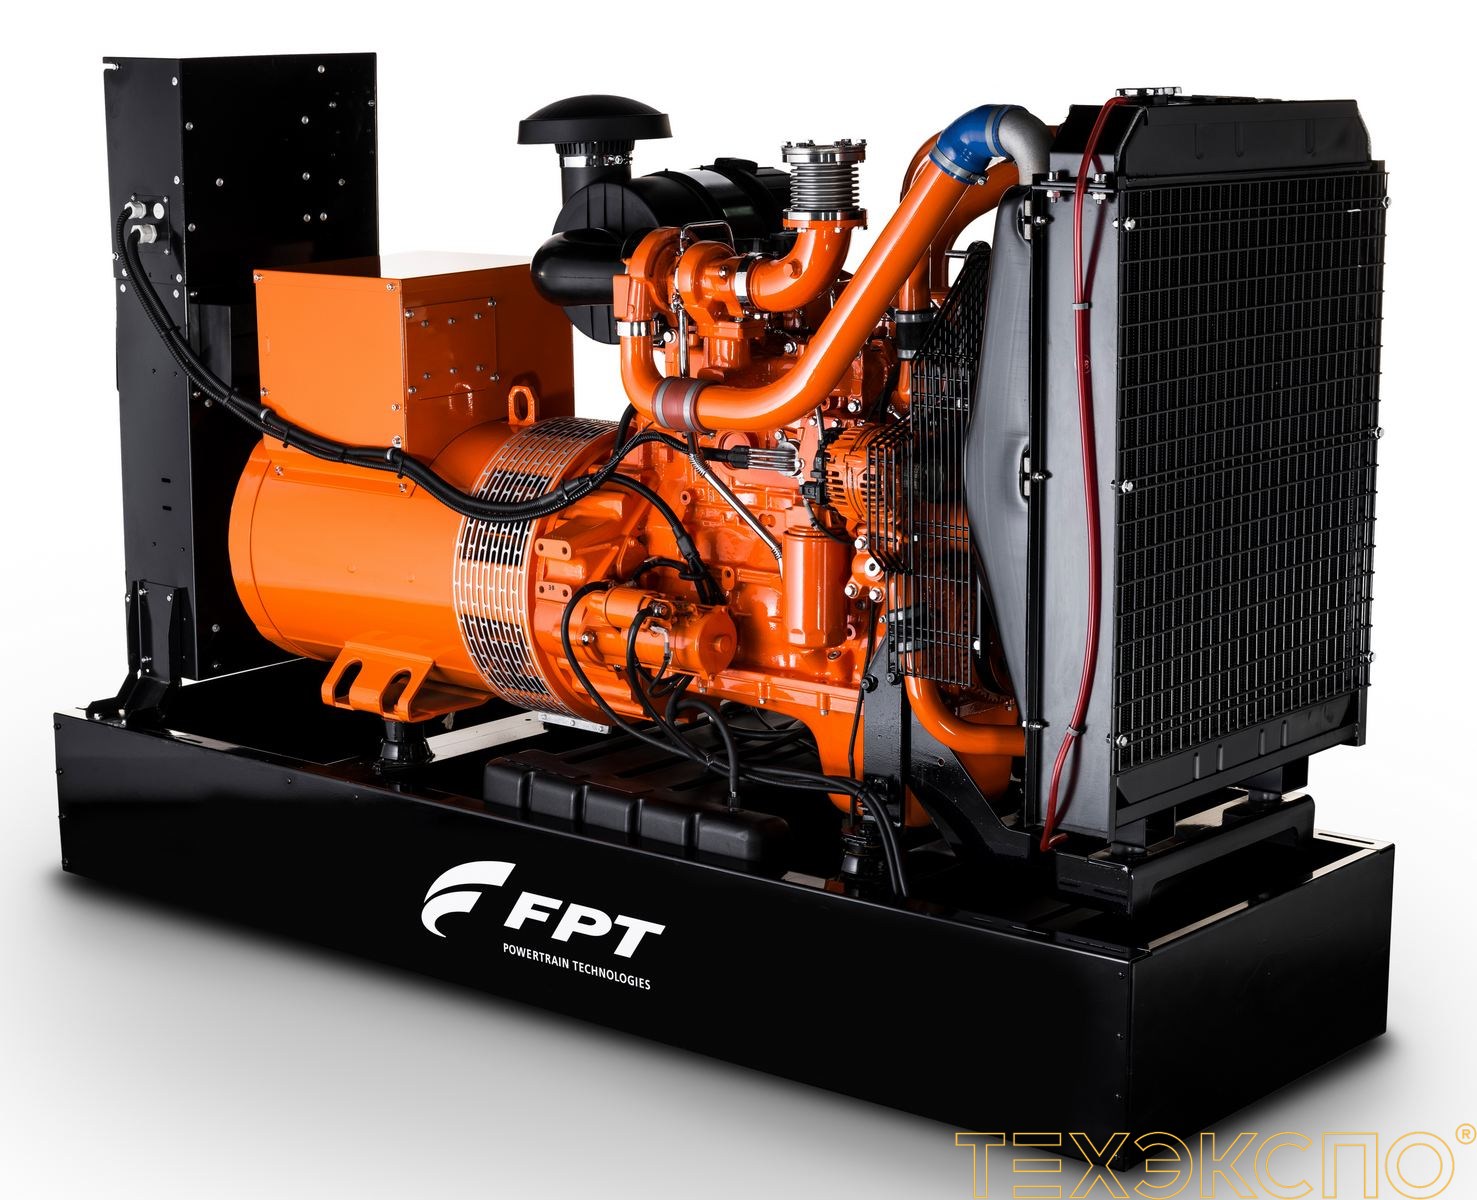 FPT (Iveco) GE NEF120 - ДЭС 99 кВт в Санкт-Петербурге за 2 298 198 рублей | Дизельная электростанция в Техэкспо